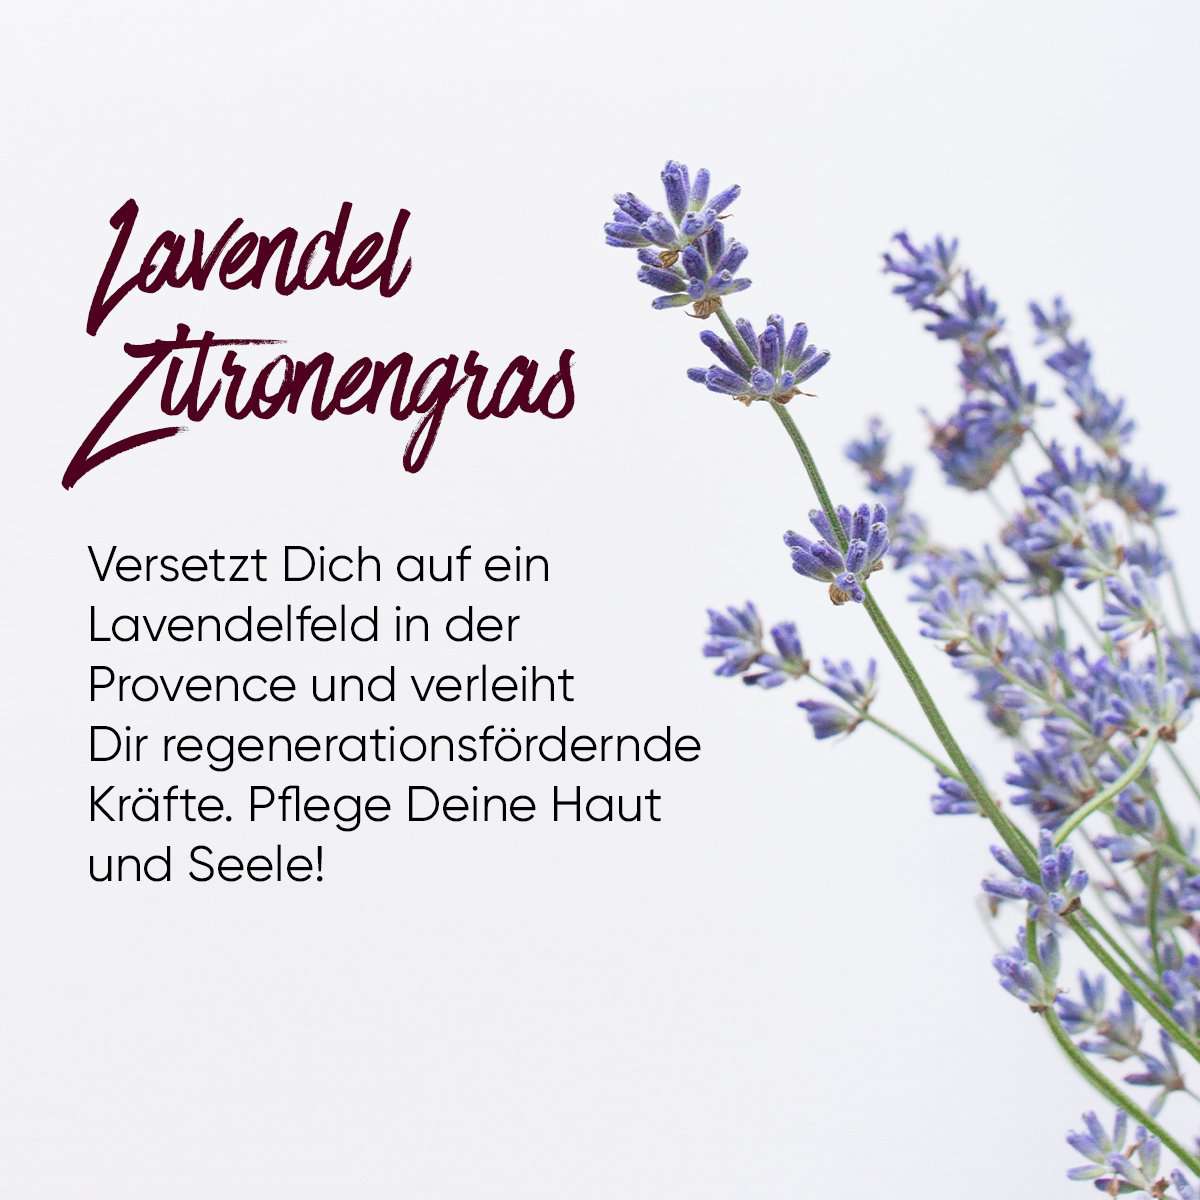 Sause Starter-Set Schaumseife Glasseifenspender Lavendel Zitronengras